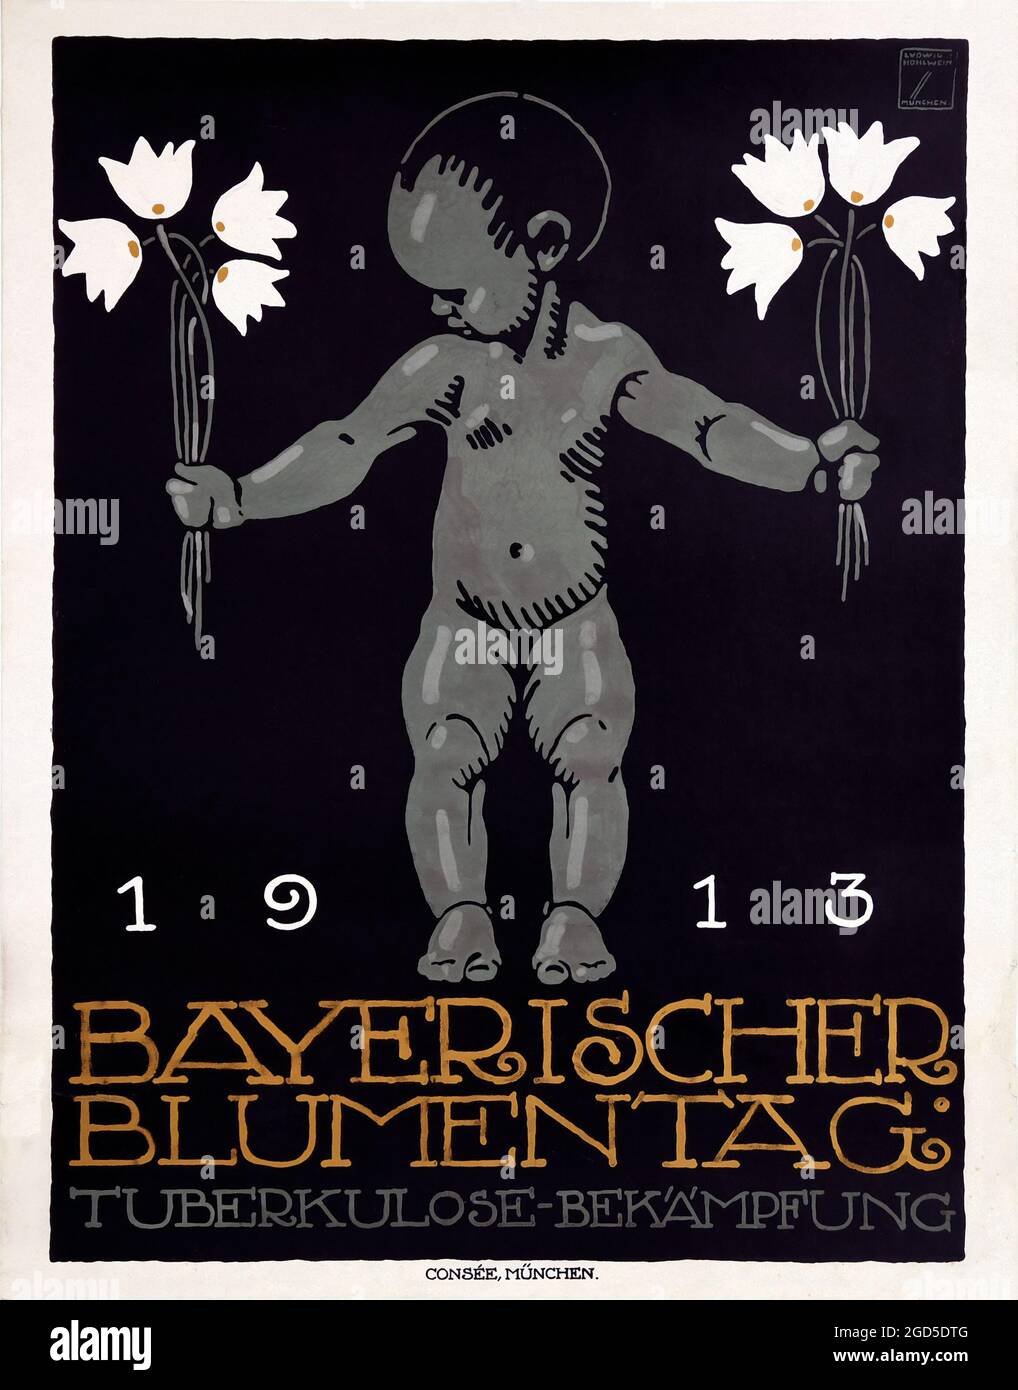 Vintage poster art - retro – BAYERISCHER BLUMENTAG, (Flower day). 1913. Ludwig Hohlwein artwork. Stock Photo